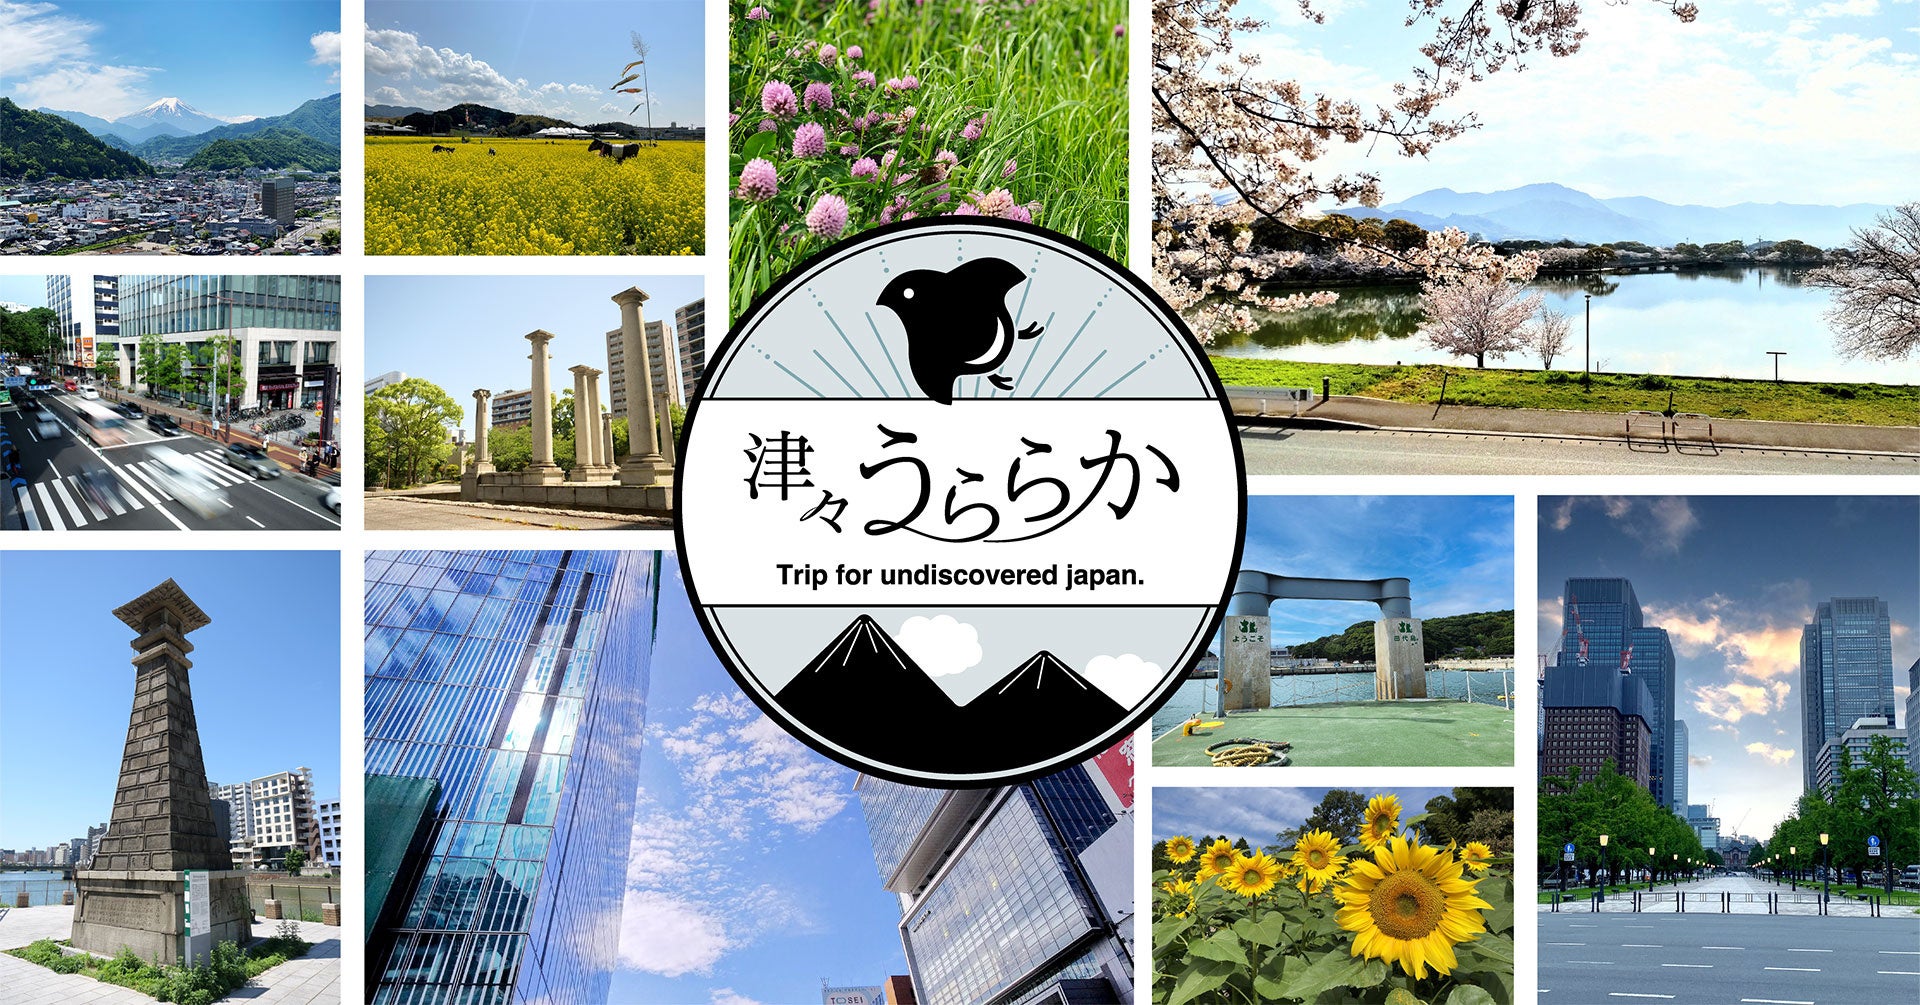 日本各地のニッチな風景写真の無料ストックフォト『津々うららか』サービスインのお知らせ